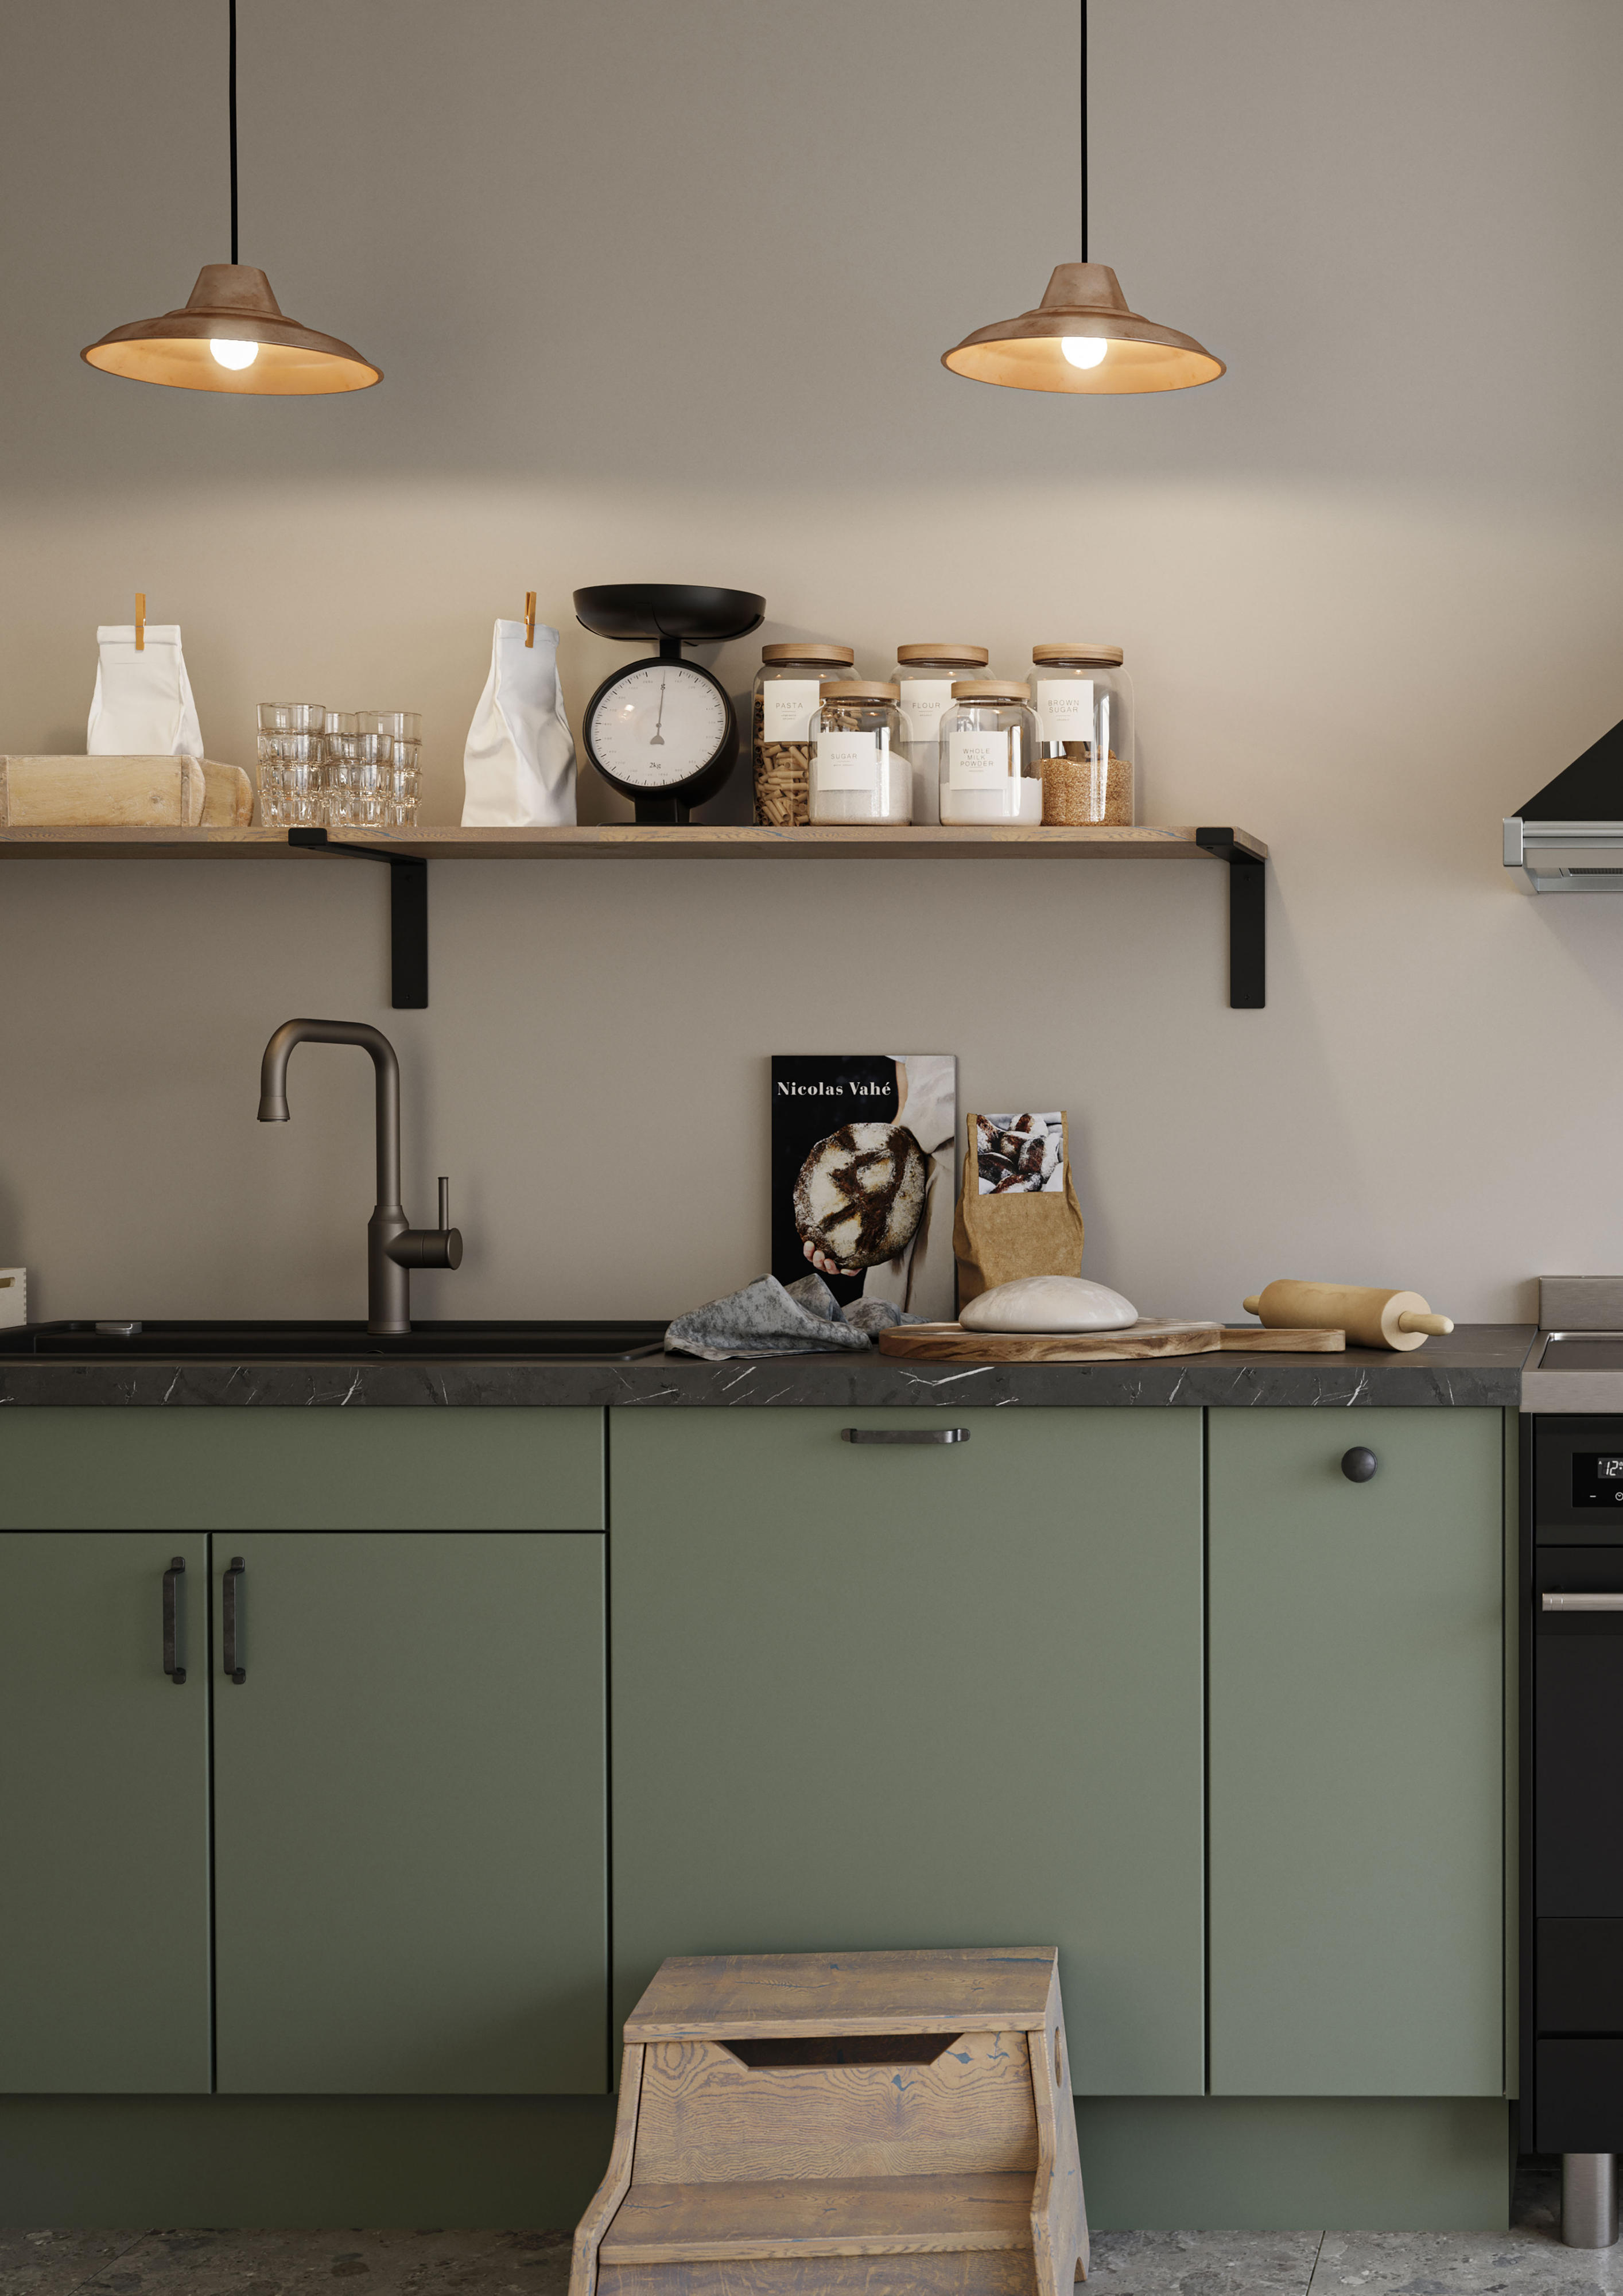 Grønt Epoq Trend Sage køkken med sort vask og bordplade